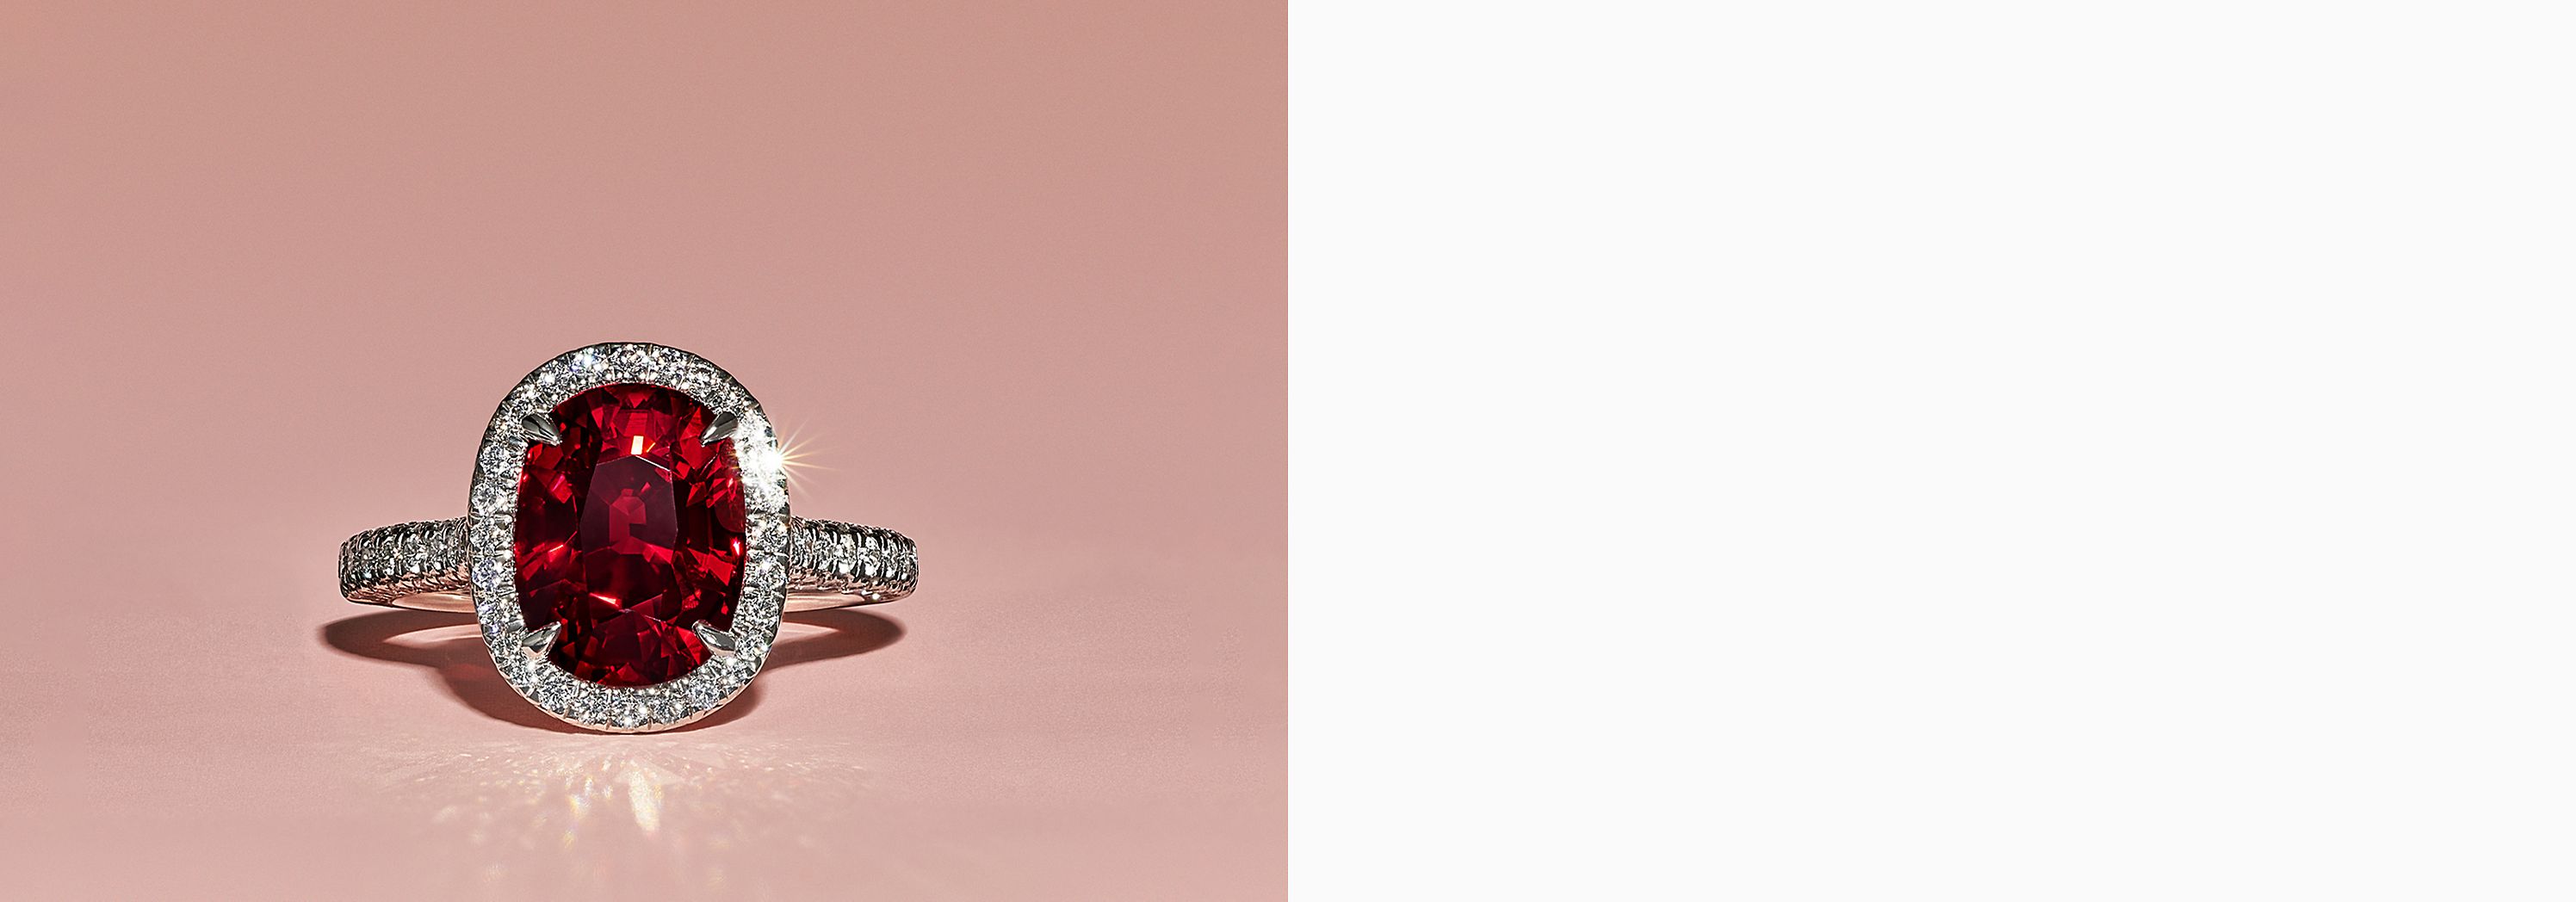 Tiffany Legacy Gemstones | Tiffany & Co.